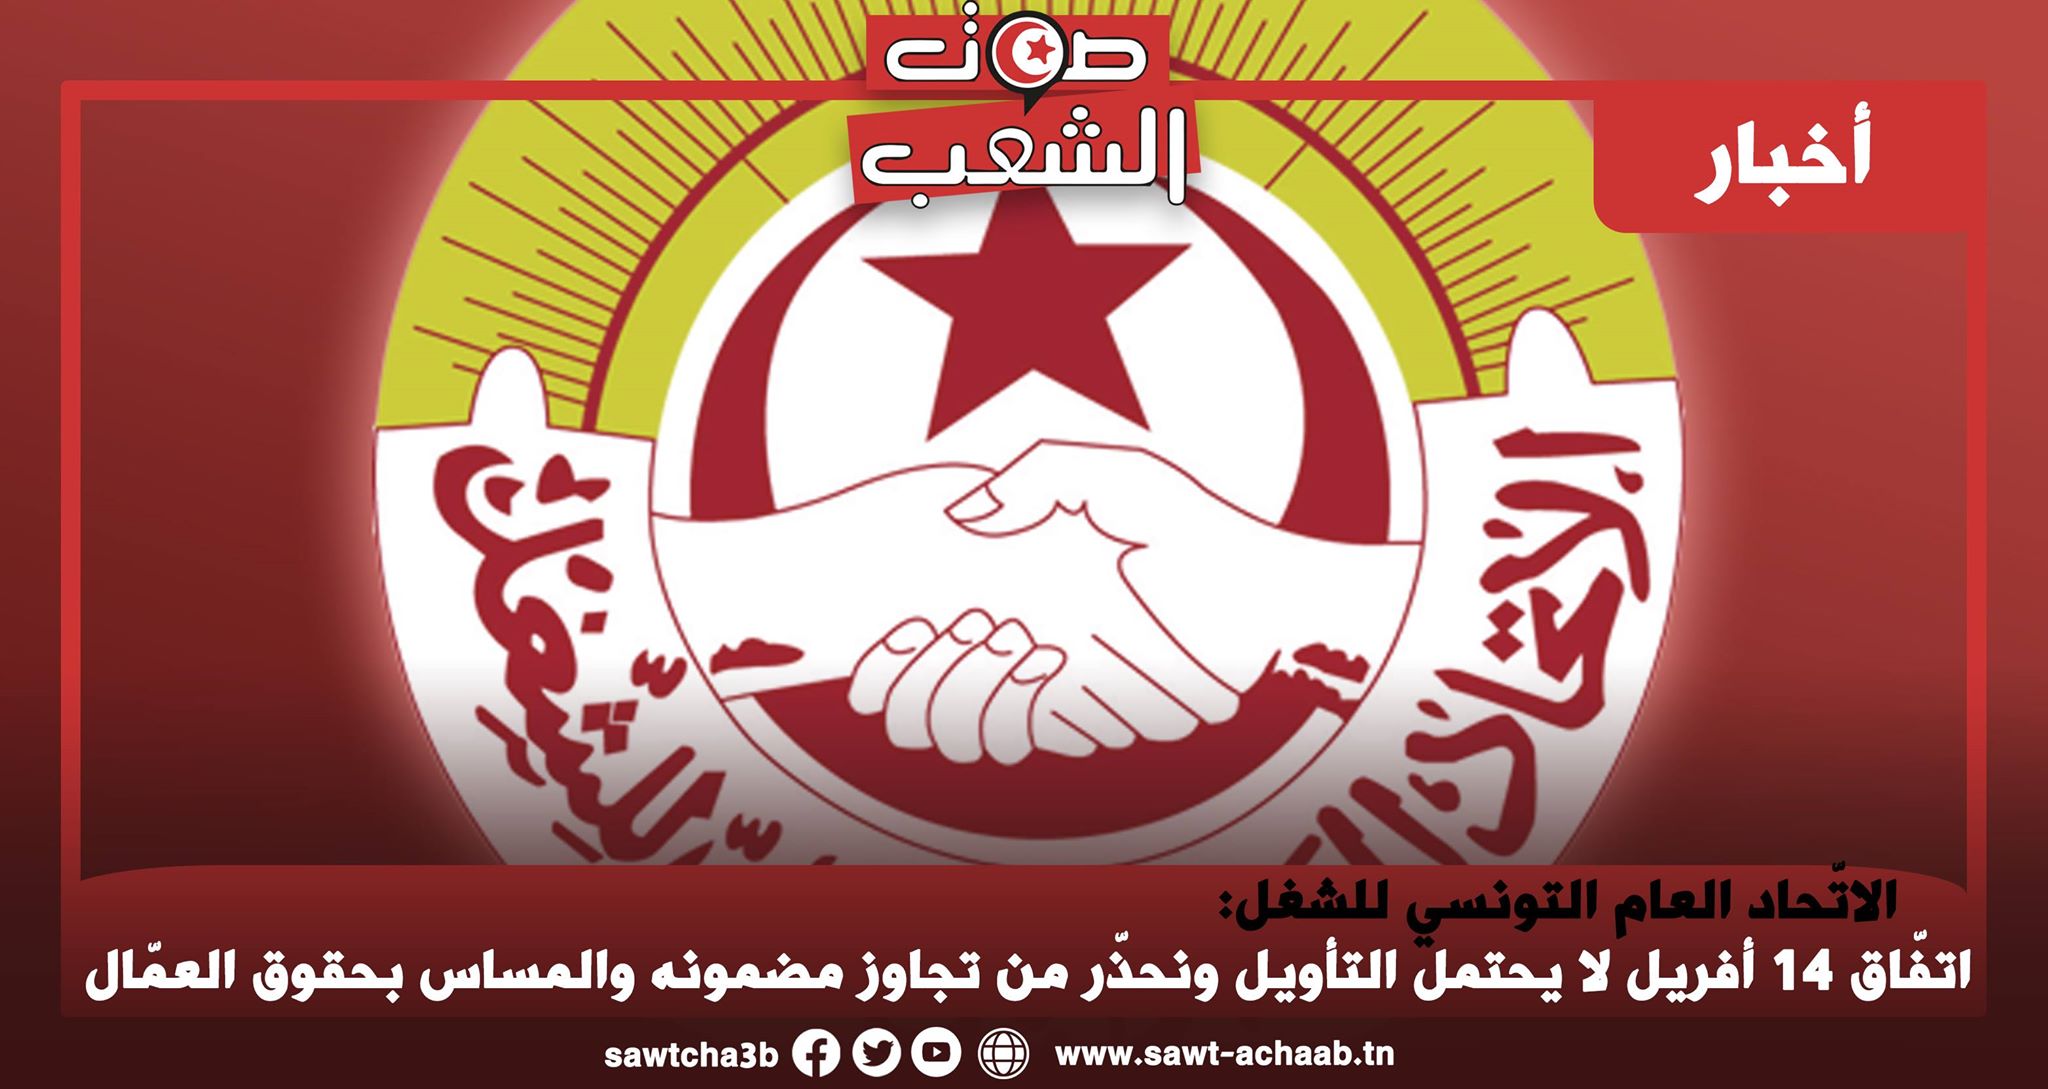 الاتّحاد العام التونسي للشغل: اتفّاق 14 أفريل لا يحتمل التأويل ونحذّر من تجاوز مضمونه والمساس بحقوق العمّال